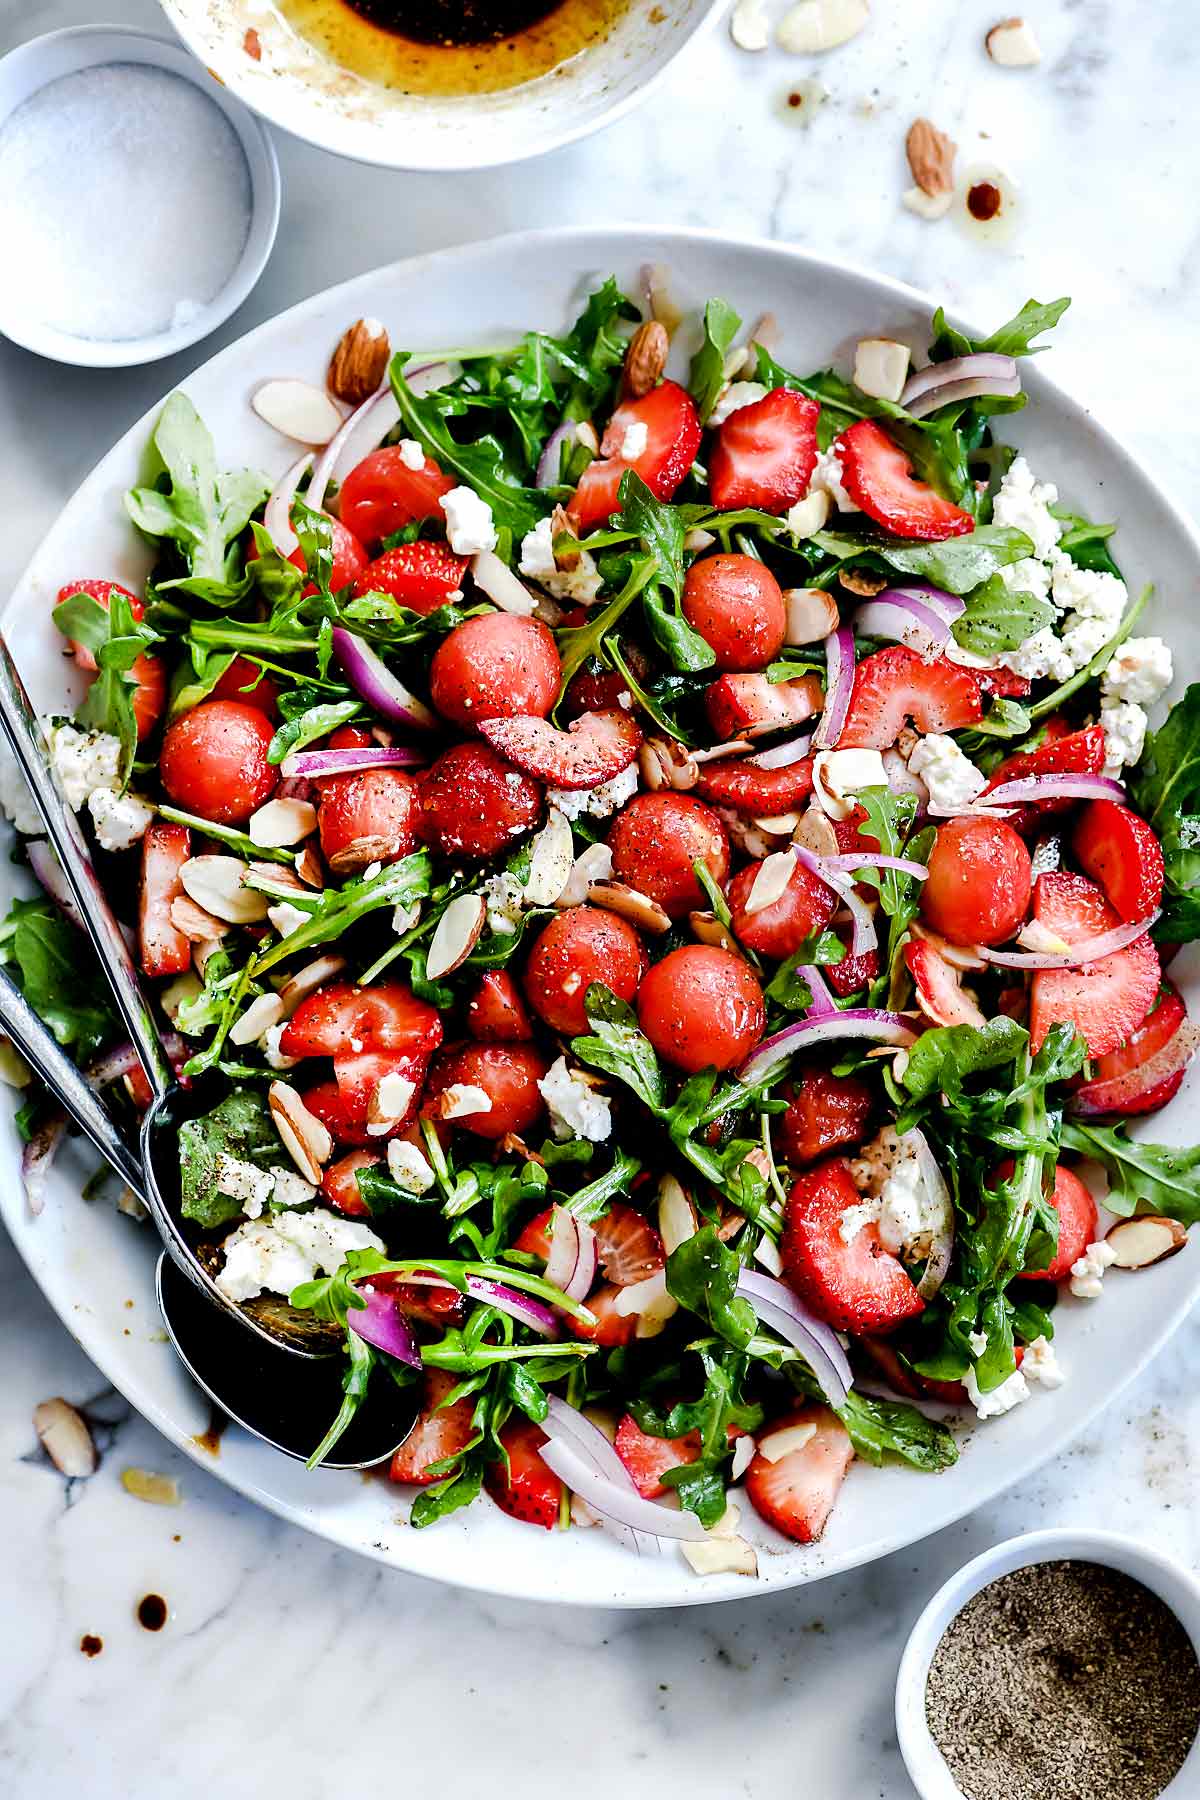 Salade de roquette aux fraises et pastèque avec vinaigrette balsamique #foodiecrush.com #salade #fraise #roquette #printemps #feta